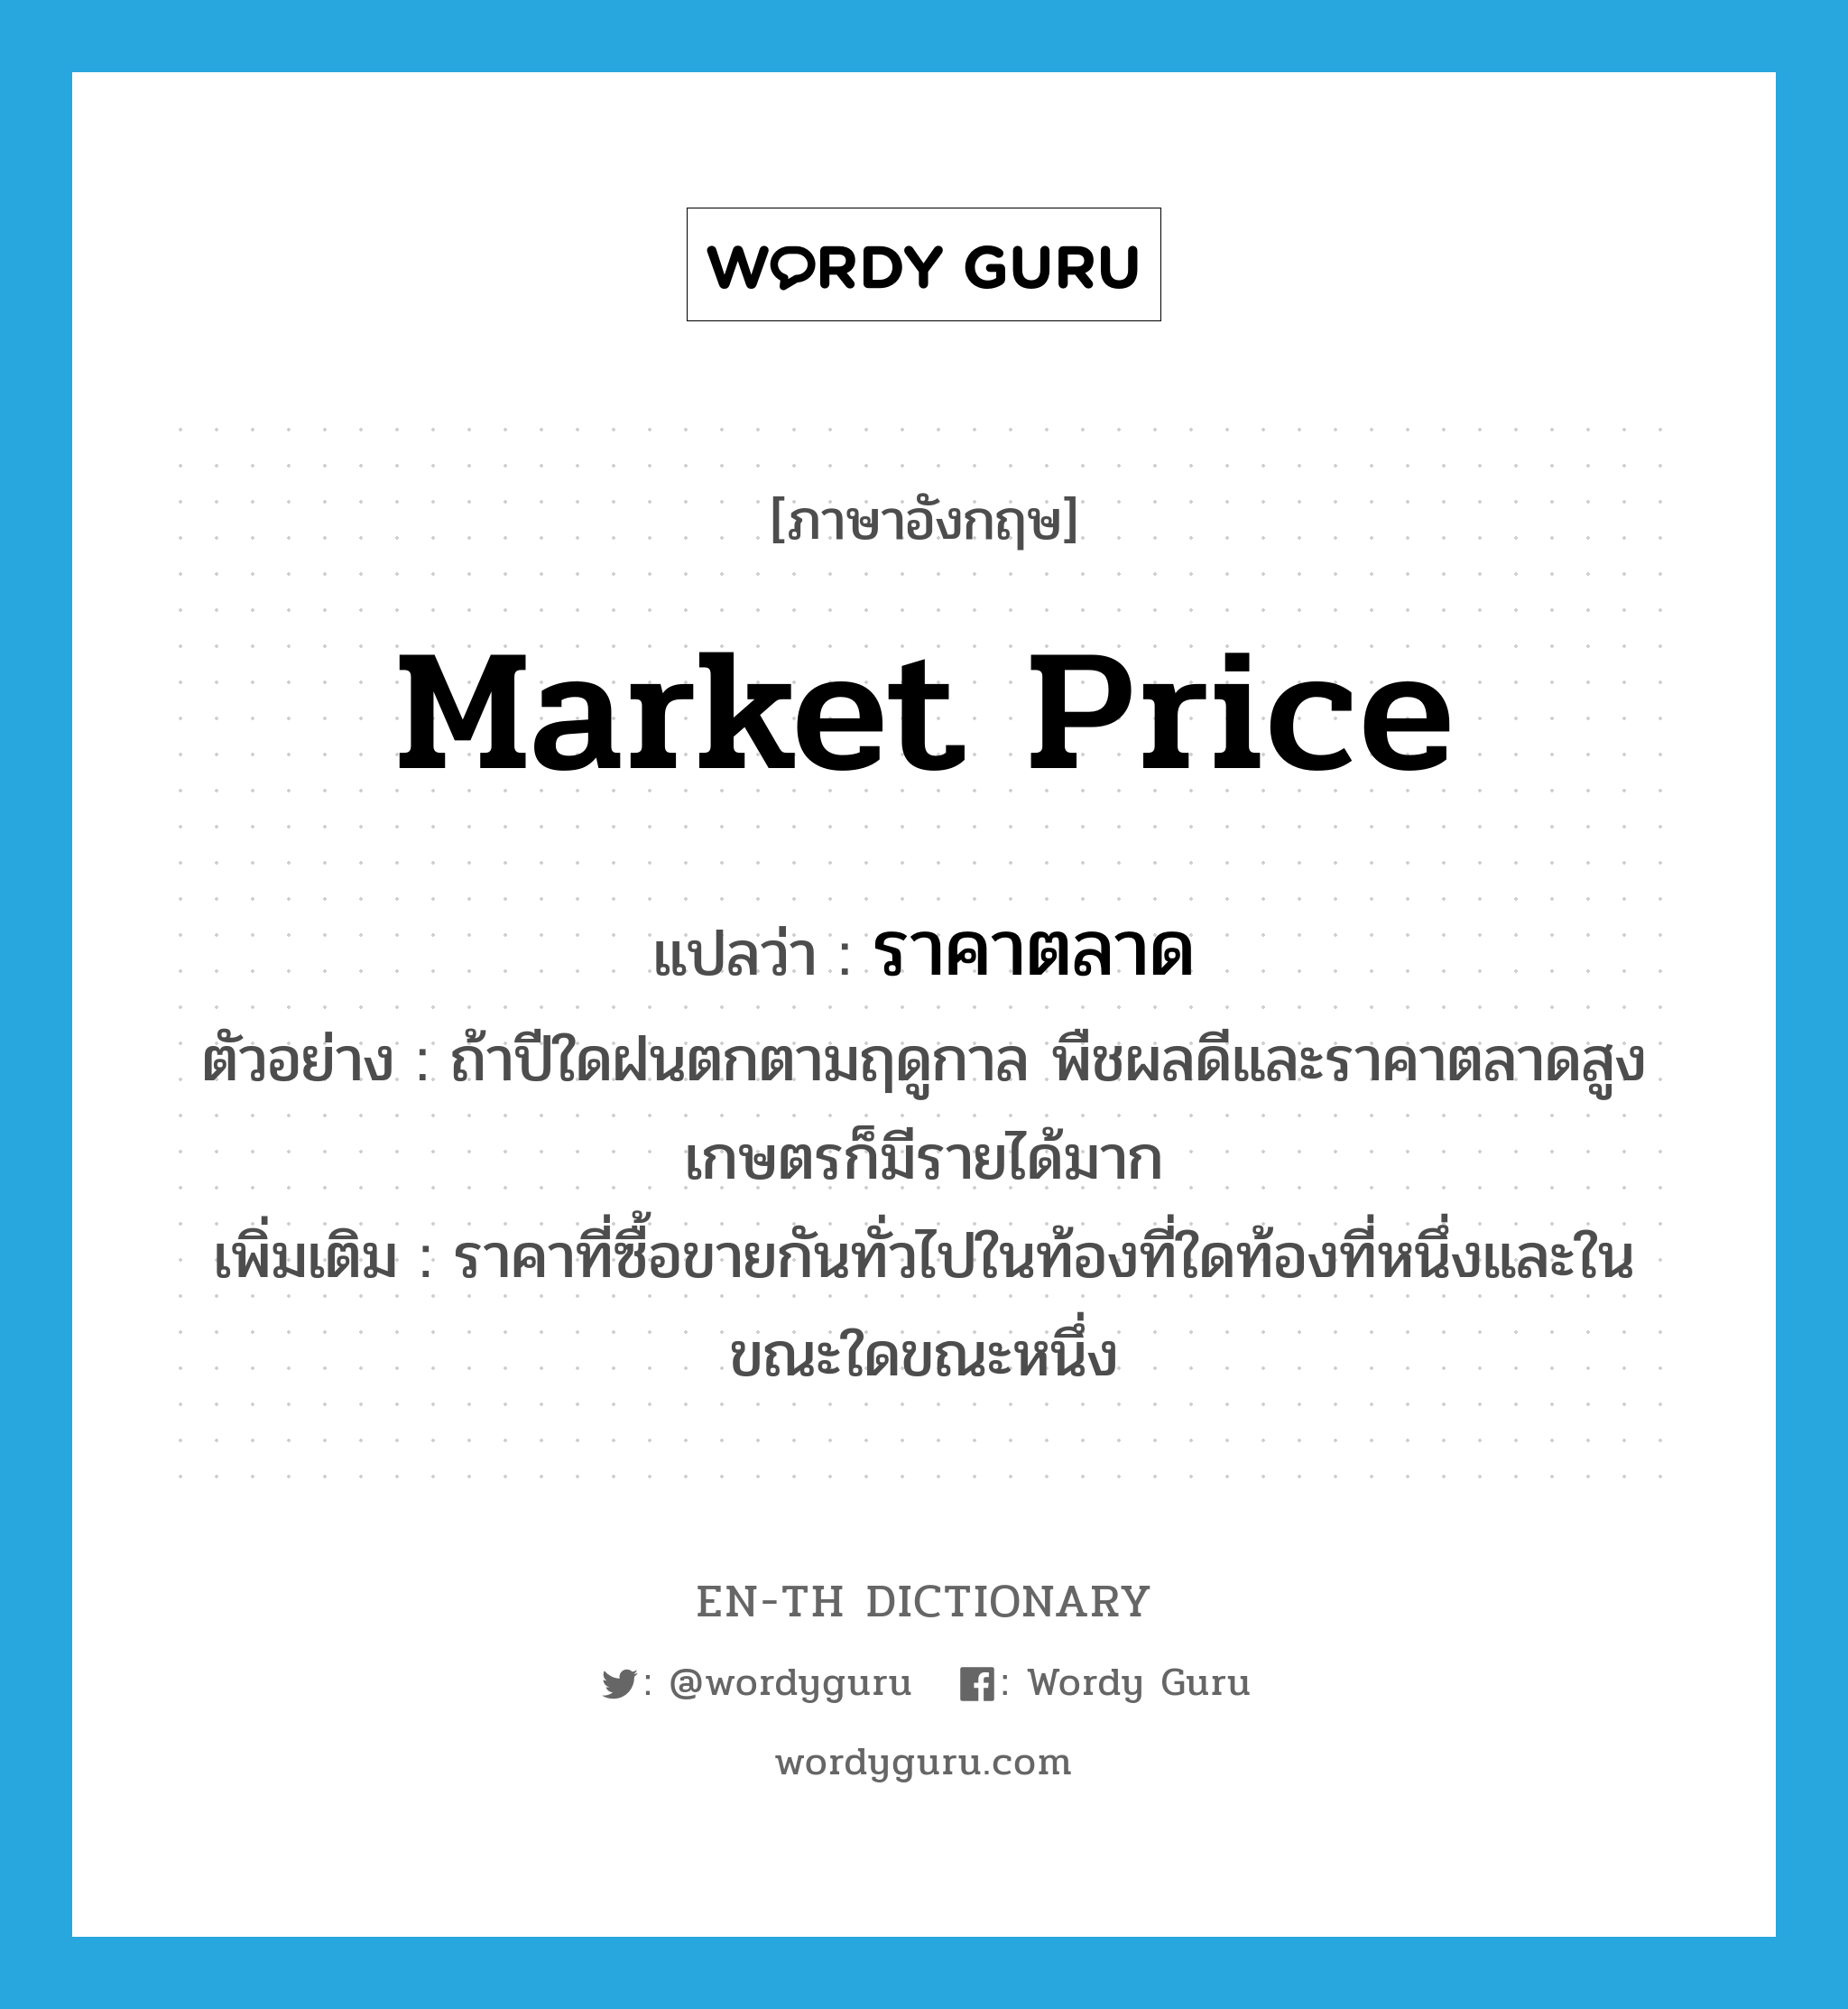 ราคาตลาด ภาษาอังกฤษ? | Wordy Guru